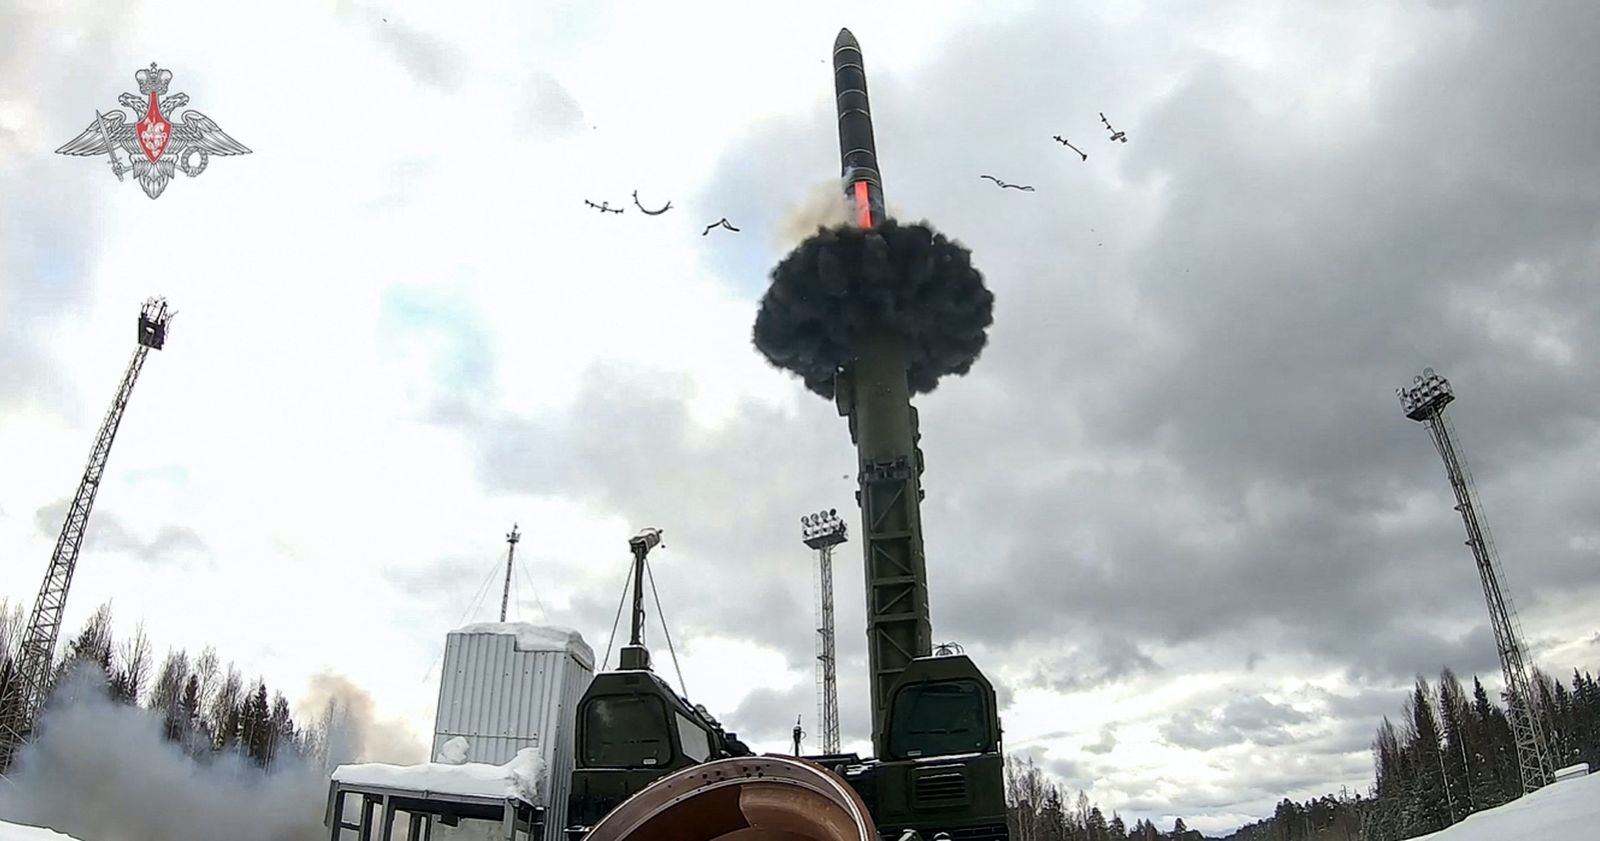 عملية إطلاق صاروخ باليستي عابر للقارات من طراز Yars أثناء تدريب لقوة الردع الاستراتيجية الروسية، في موقع غير محدد. 19 نوفمبر 2022 - AFP